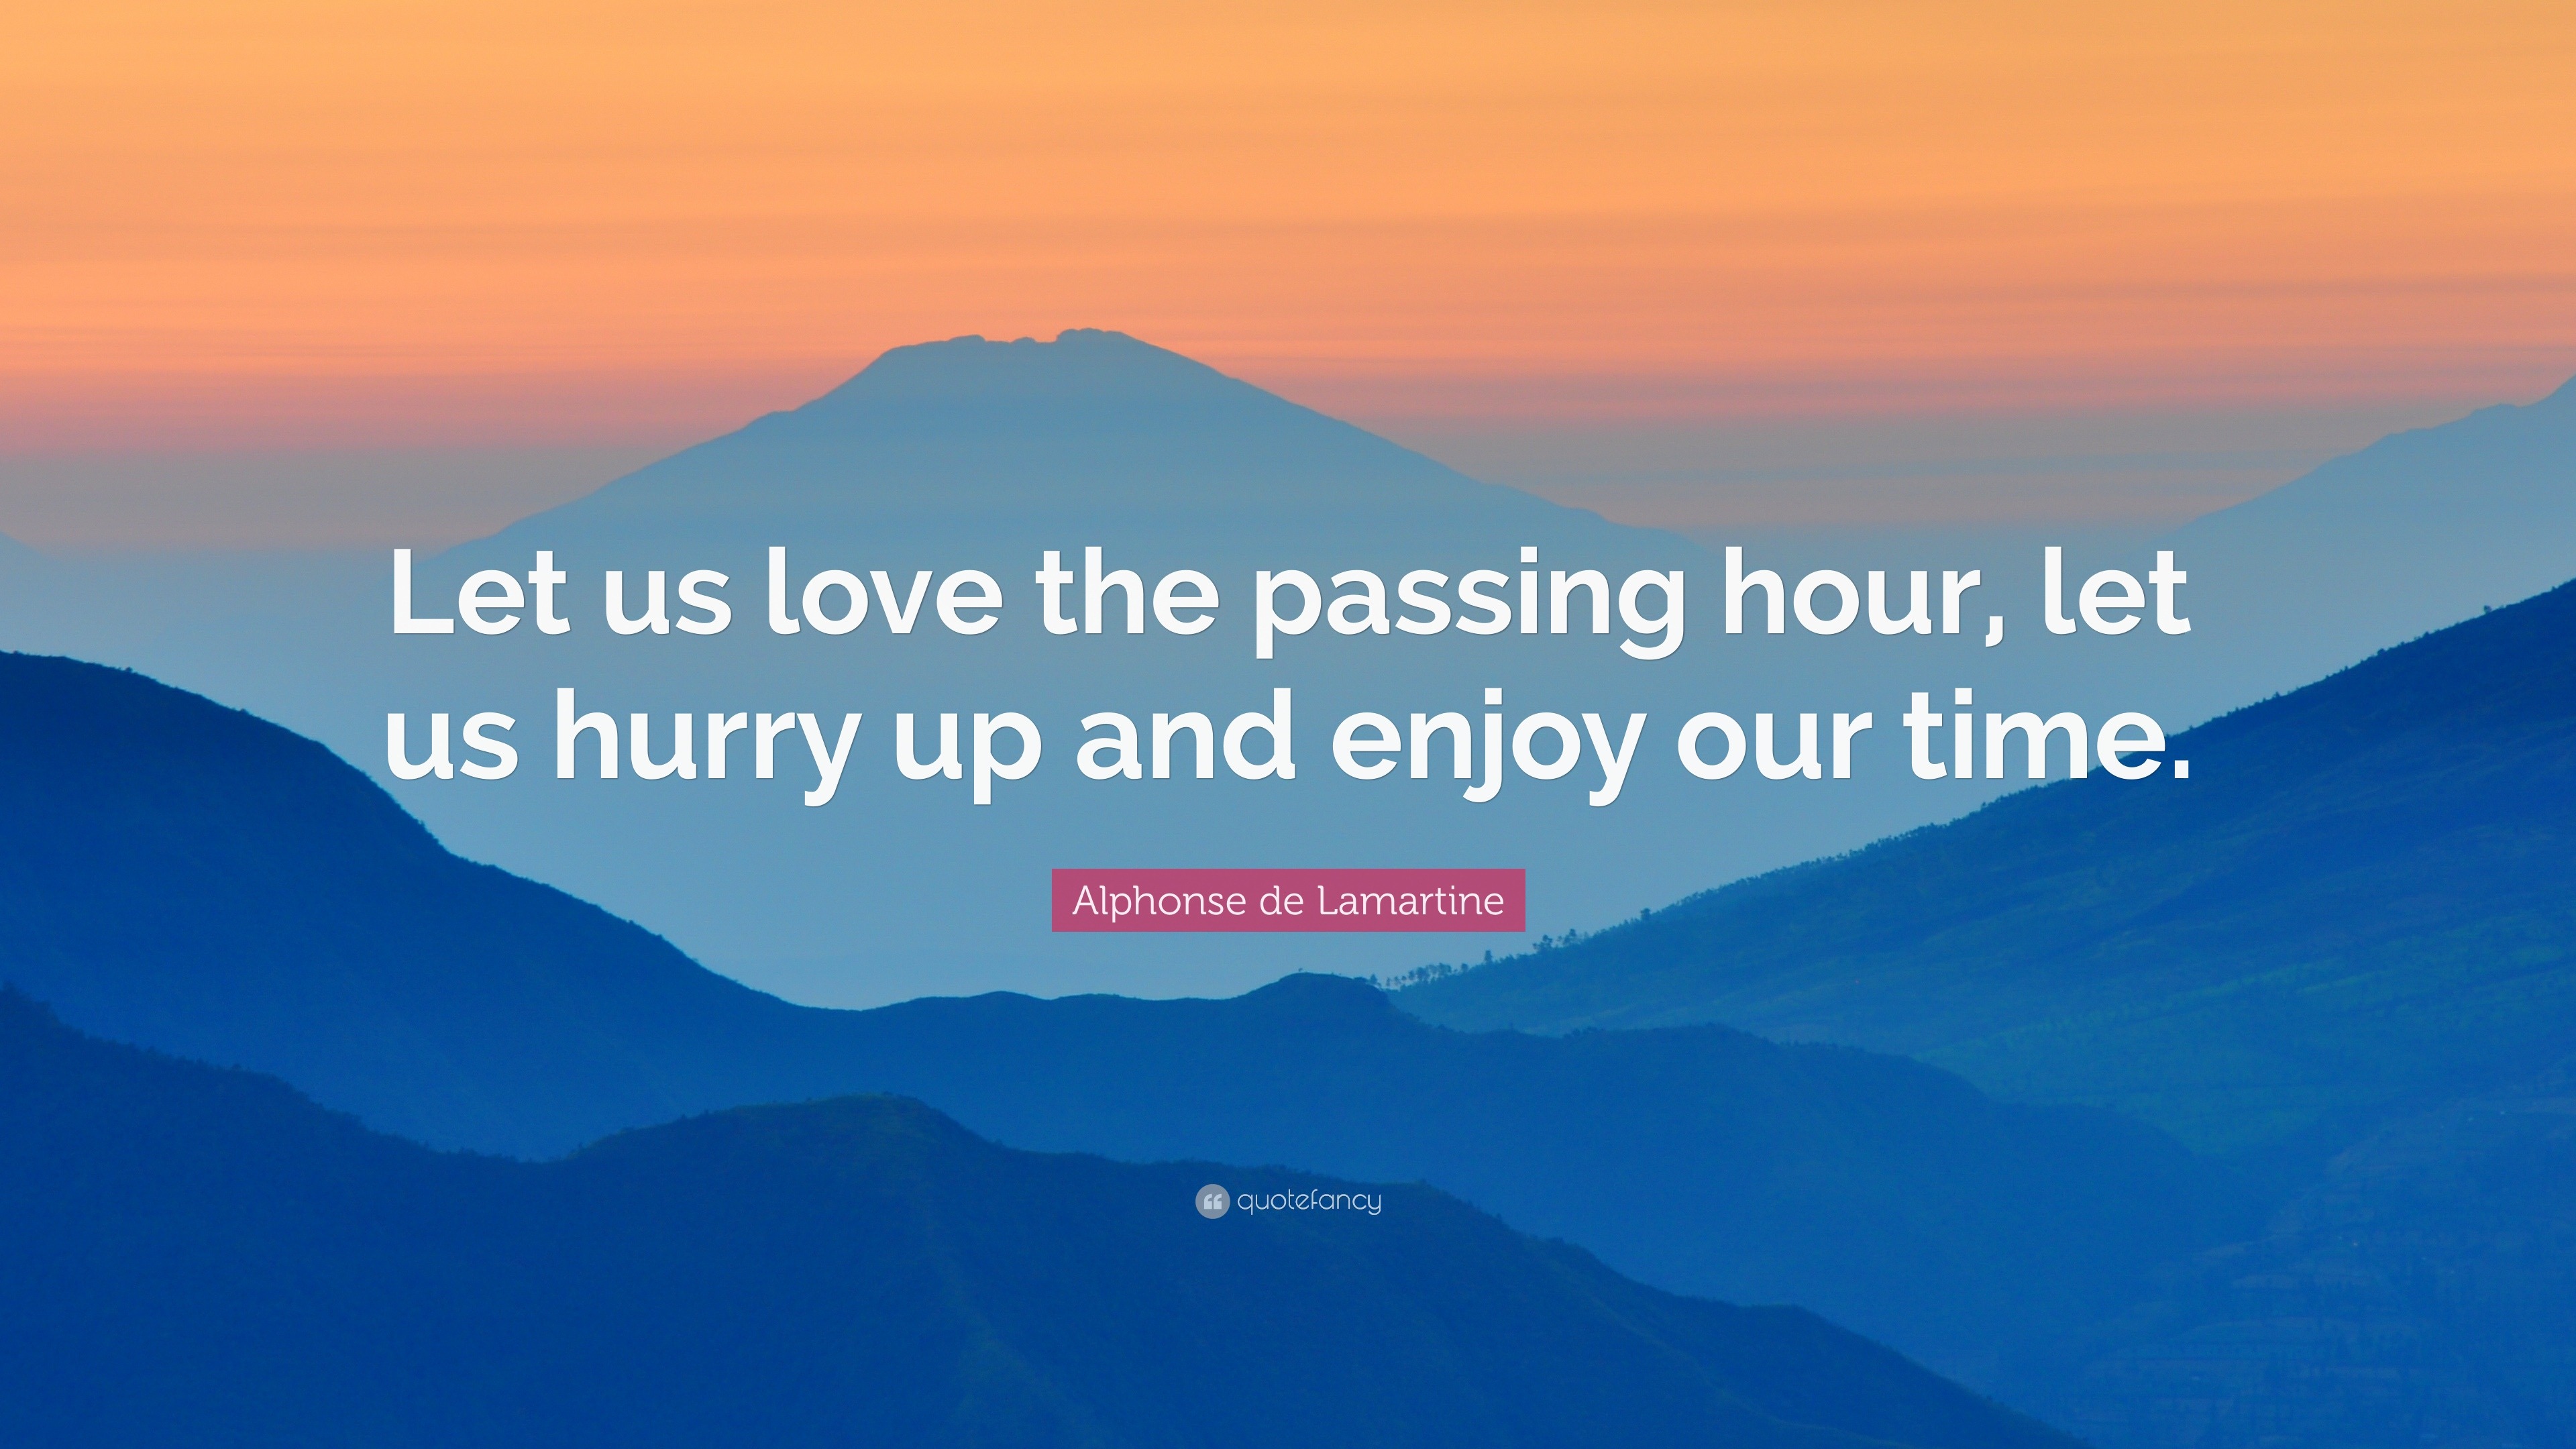 Alphonse de Lamartine Quote “Let us love the passing hour let us hurry